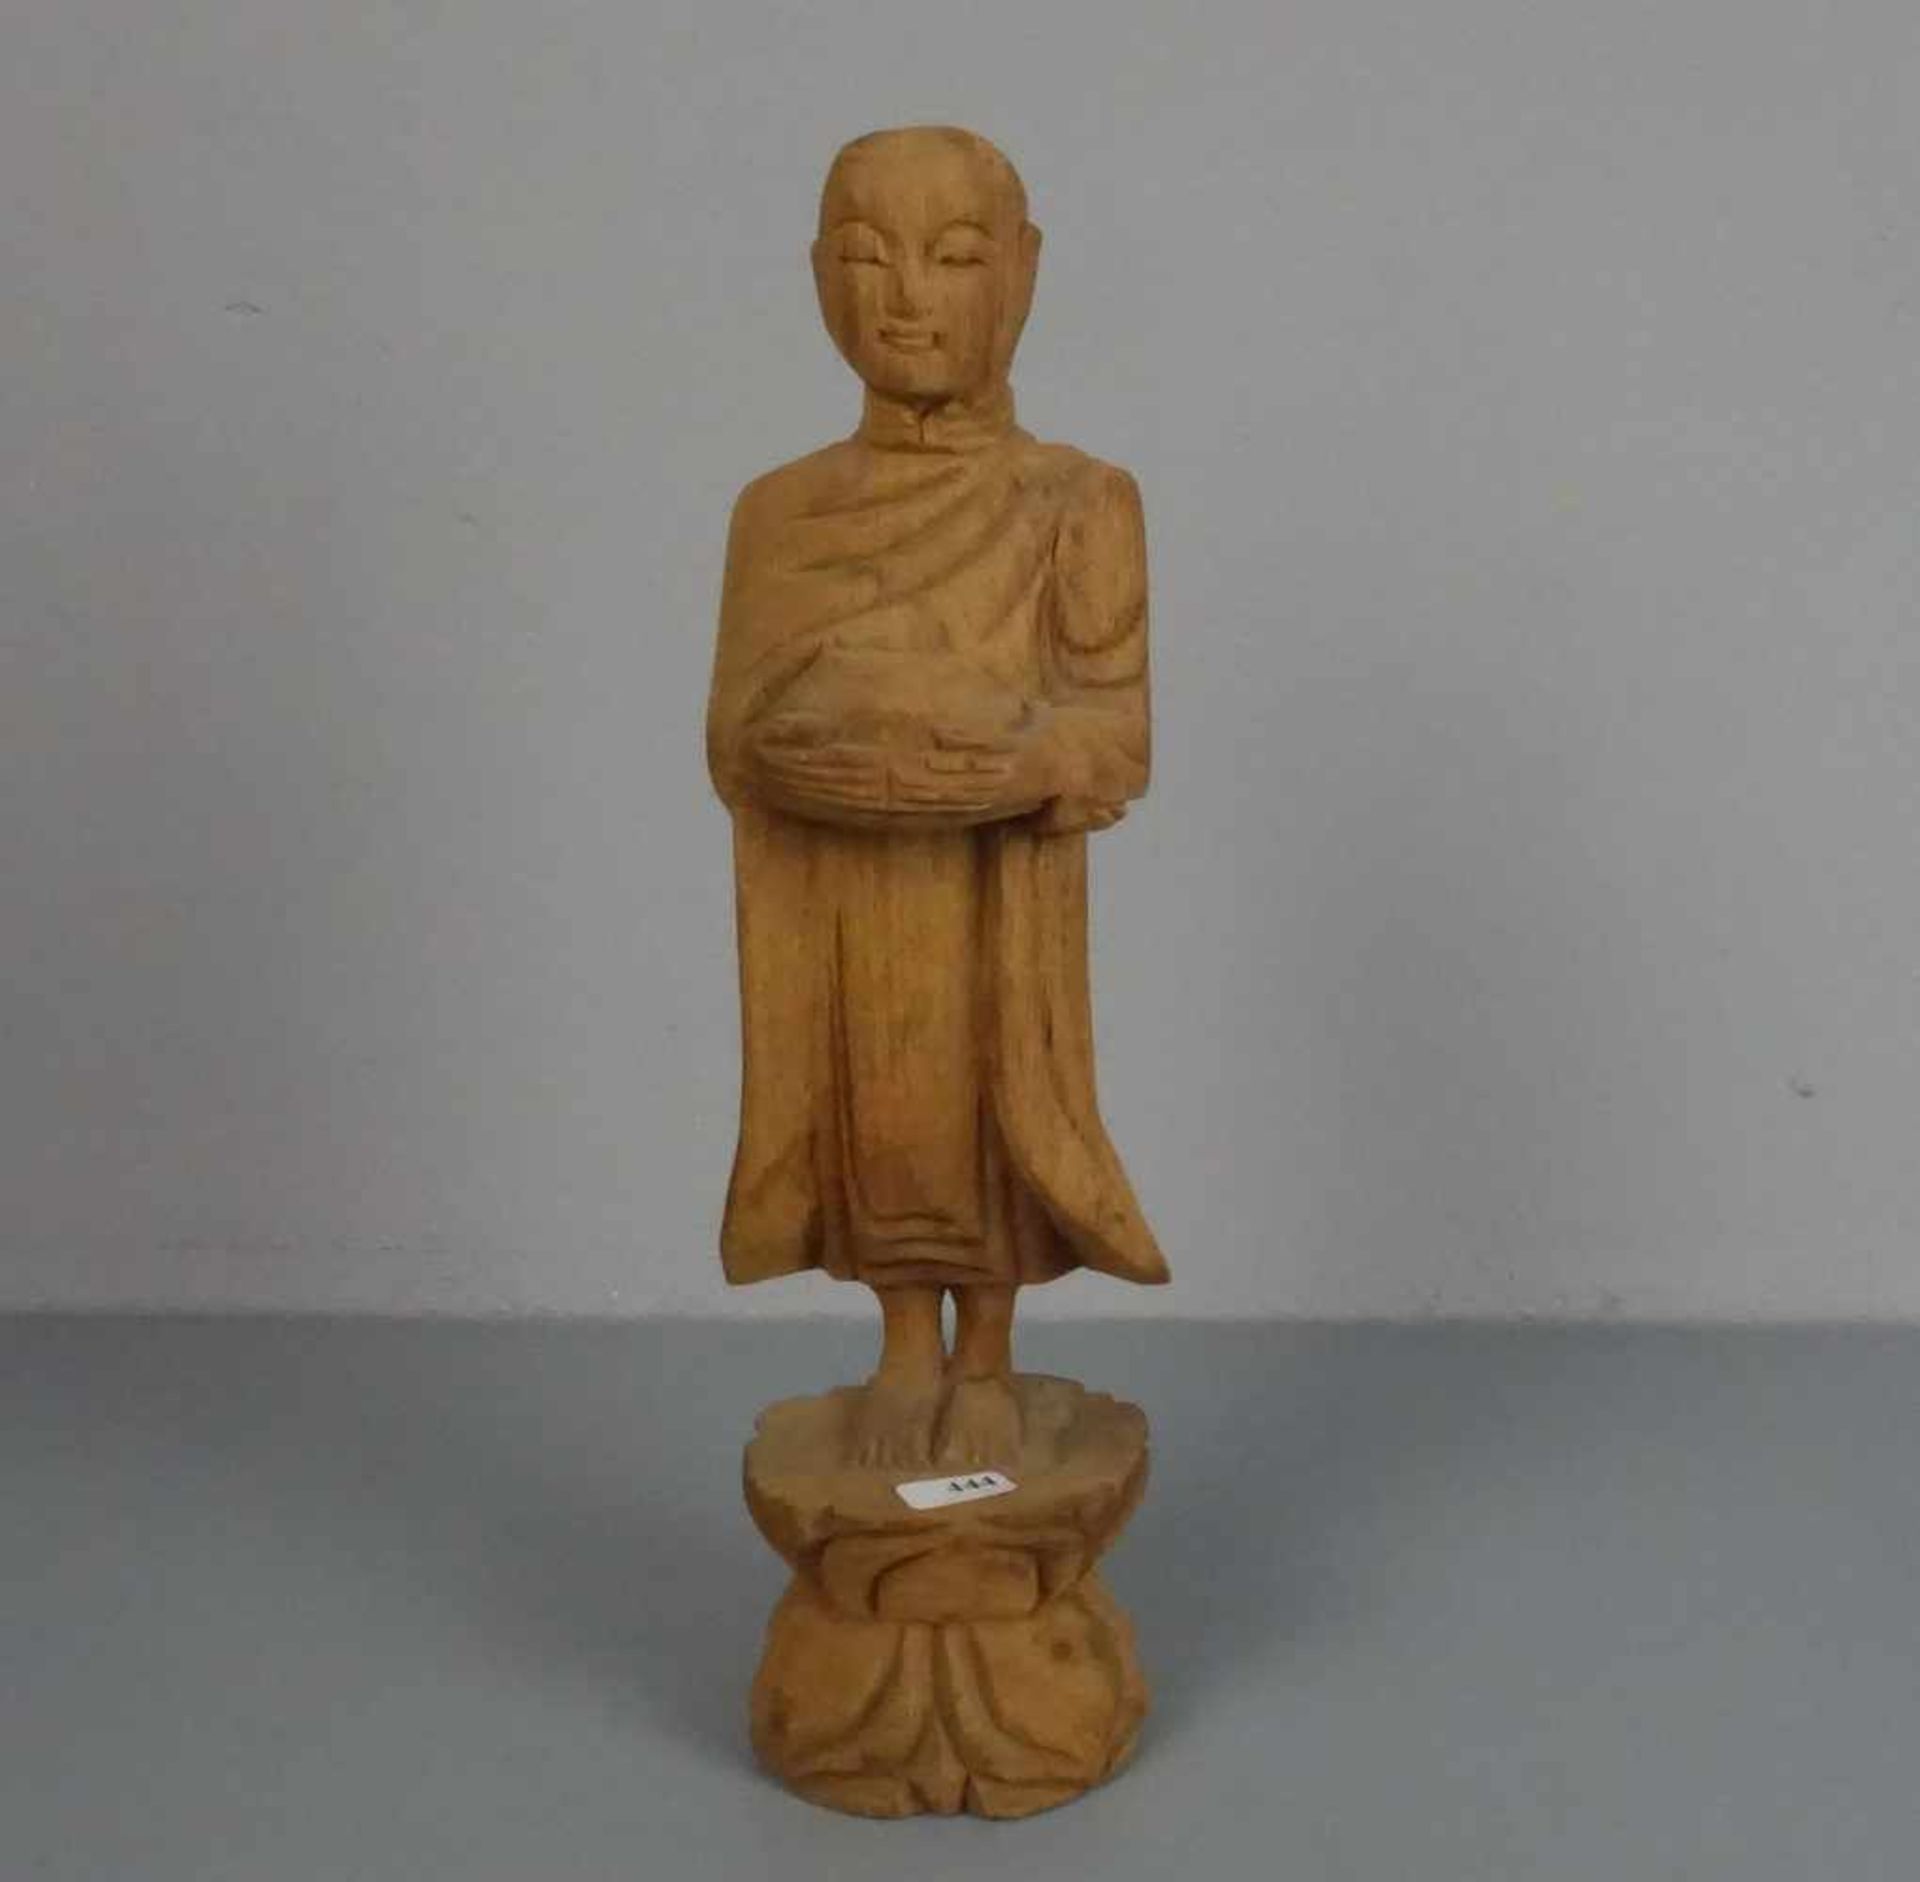 SKULPTUR: "Mönch mit Bettelschale", Holz, geschnitzt, Südostasien / Thailand. Auf stilisiertem